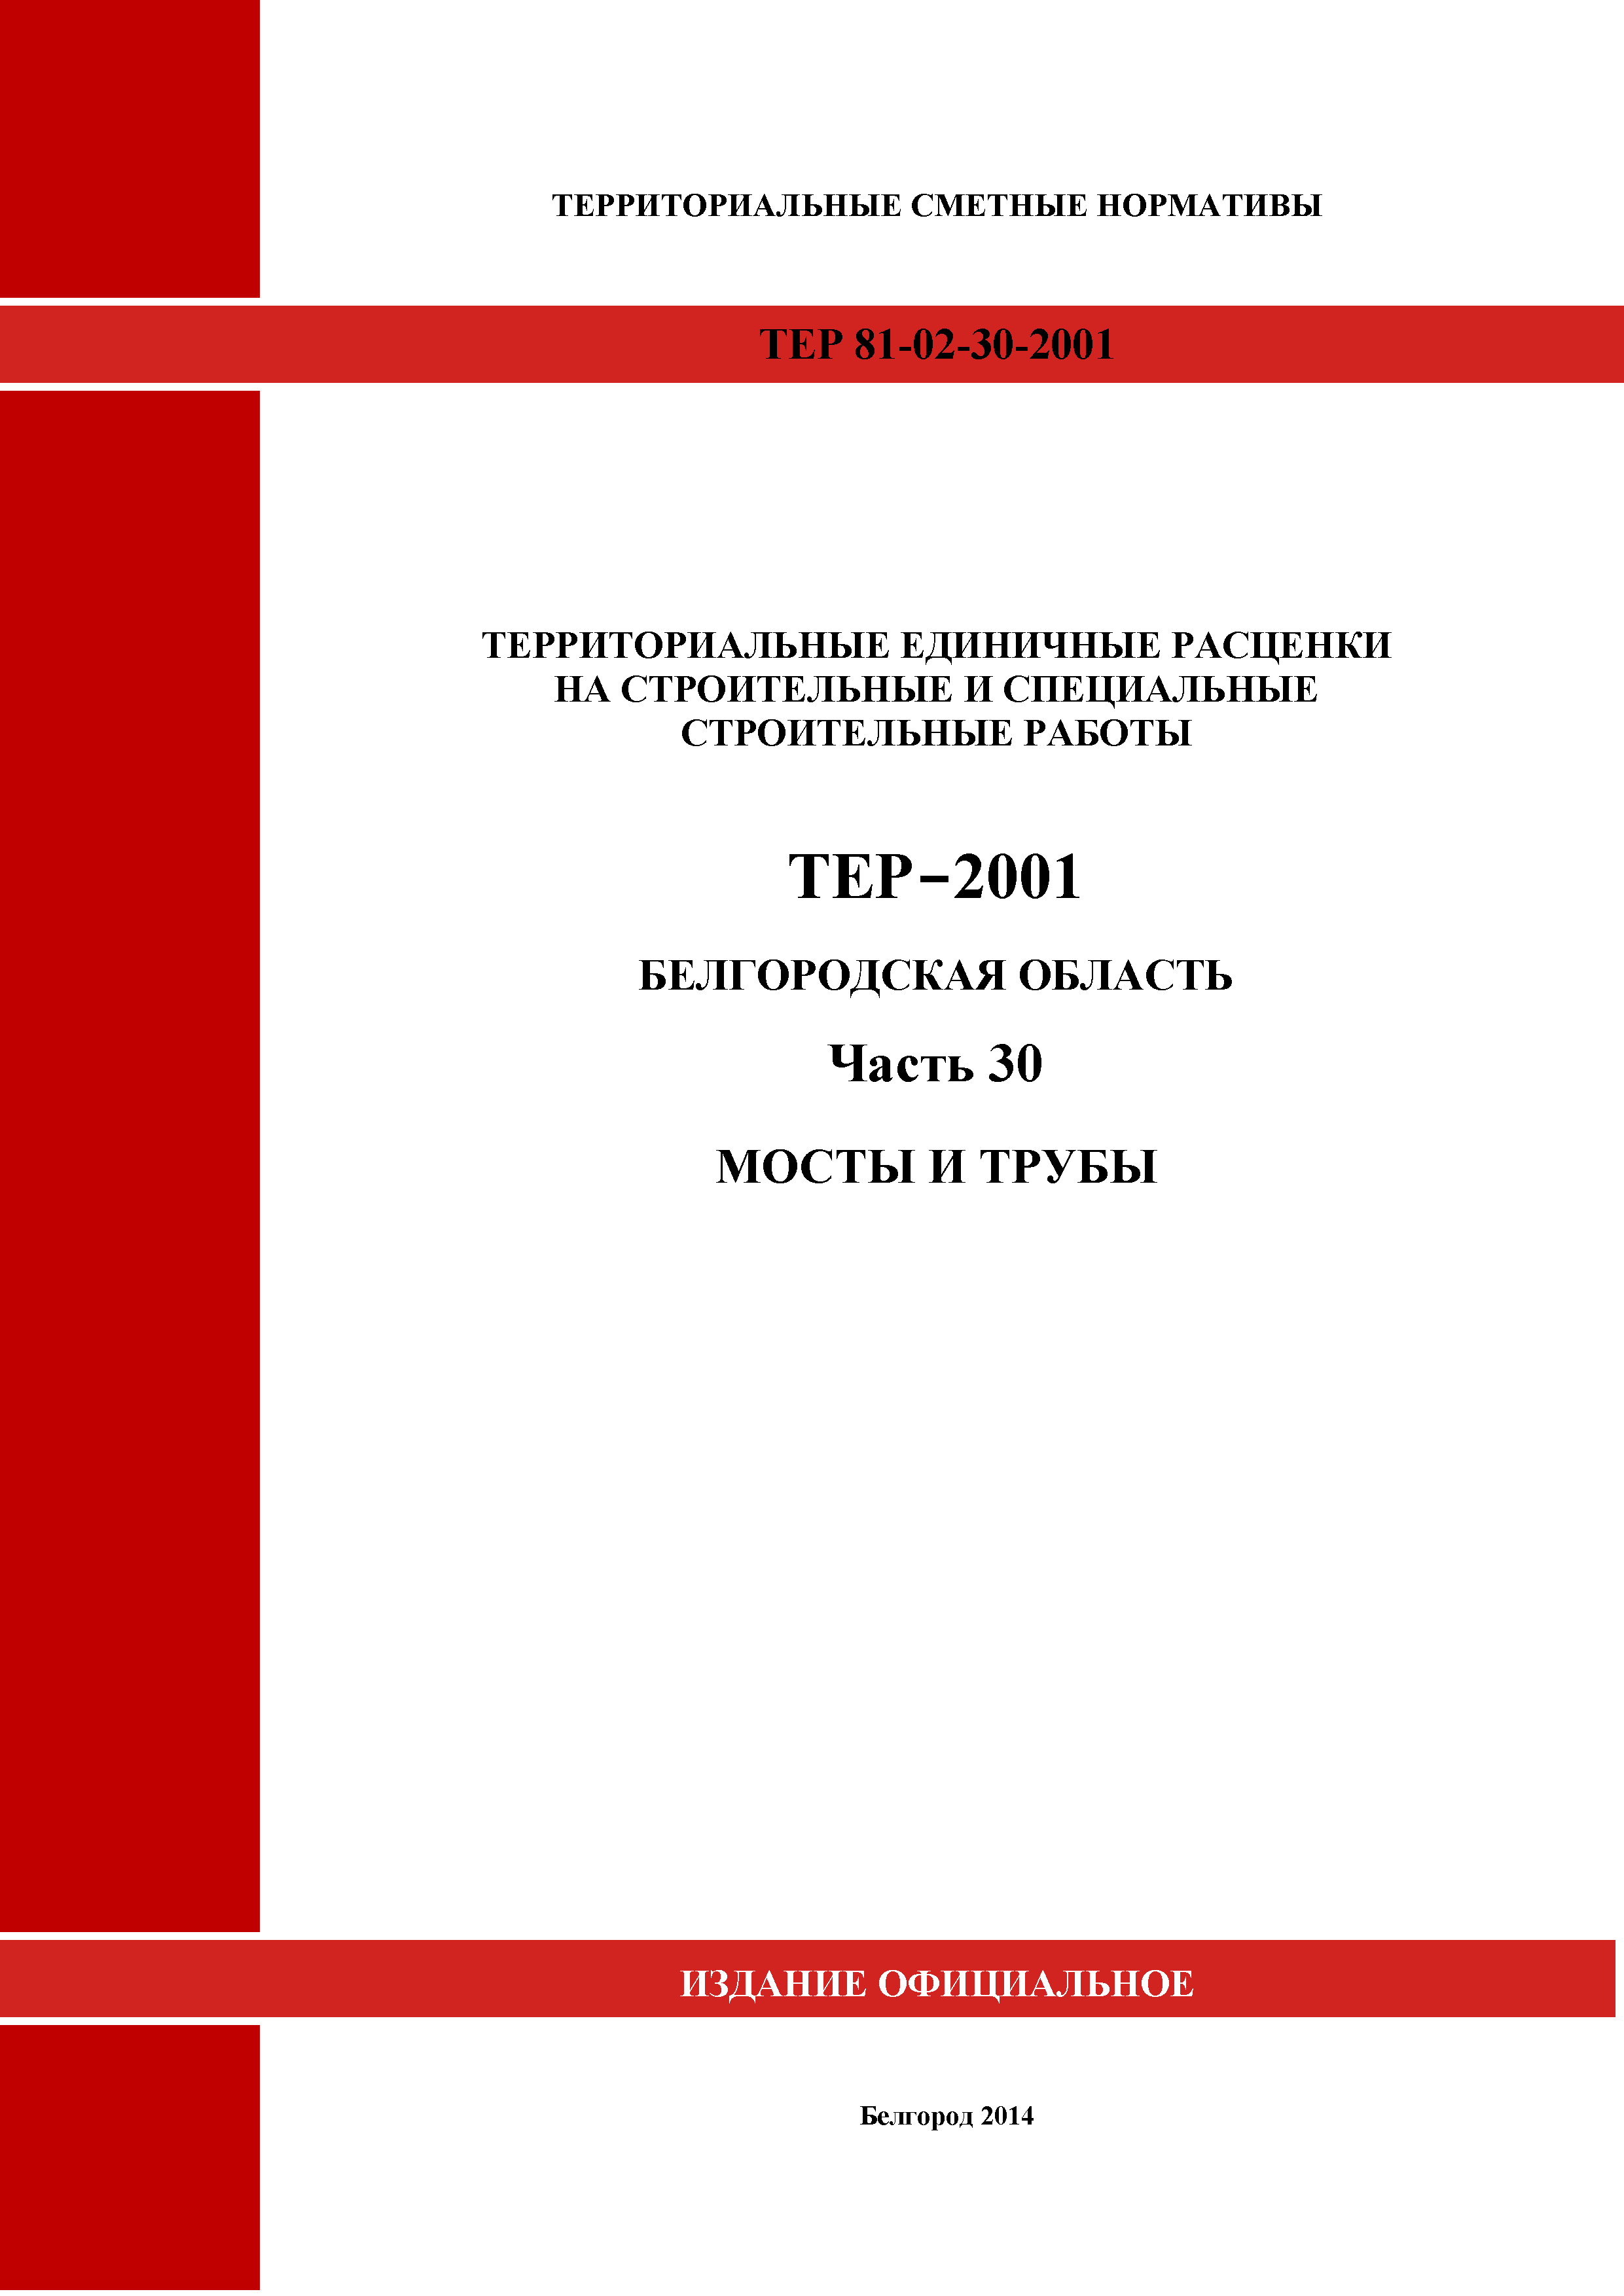 ТЕР Белгородская область 81-02-30-2001